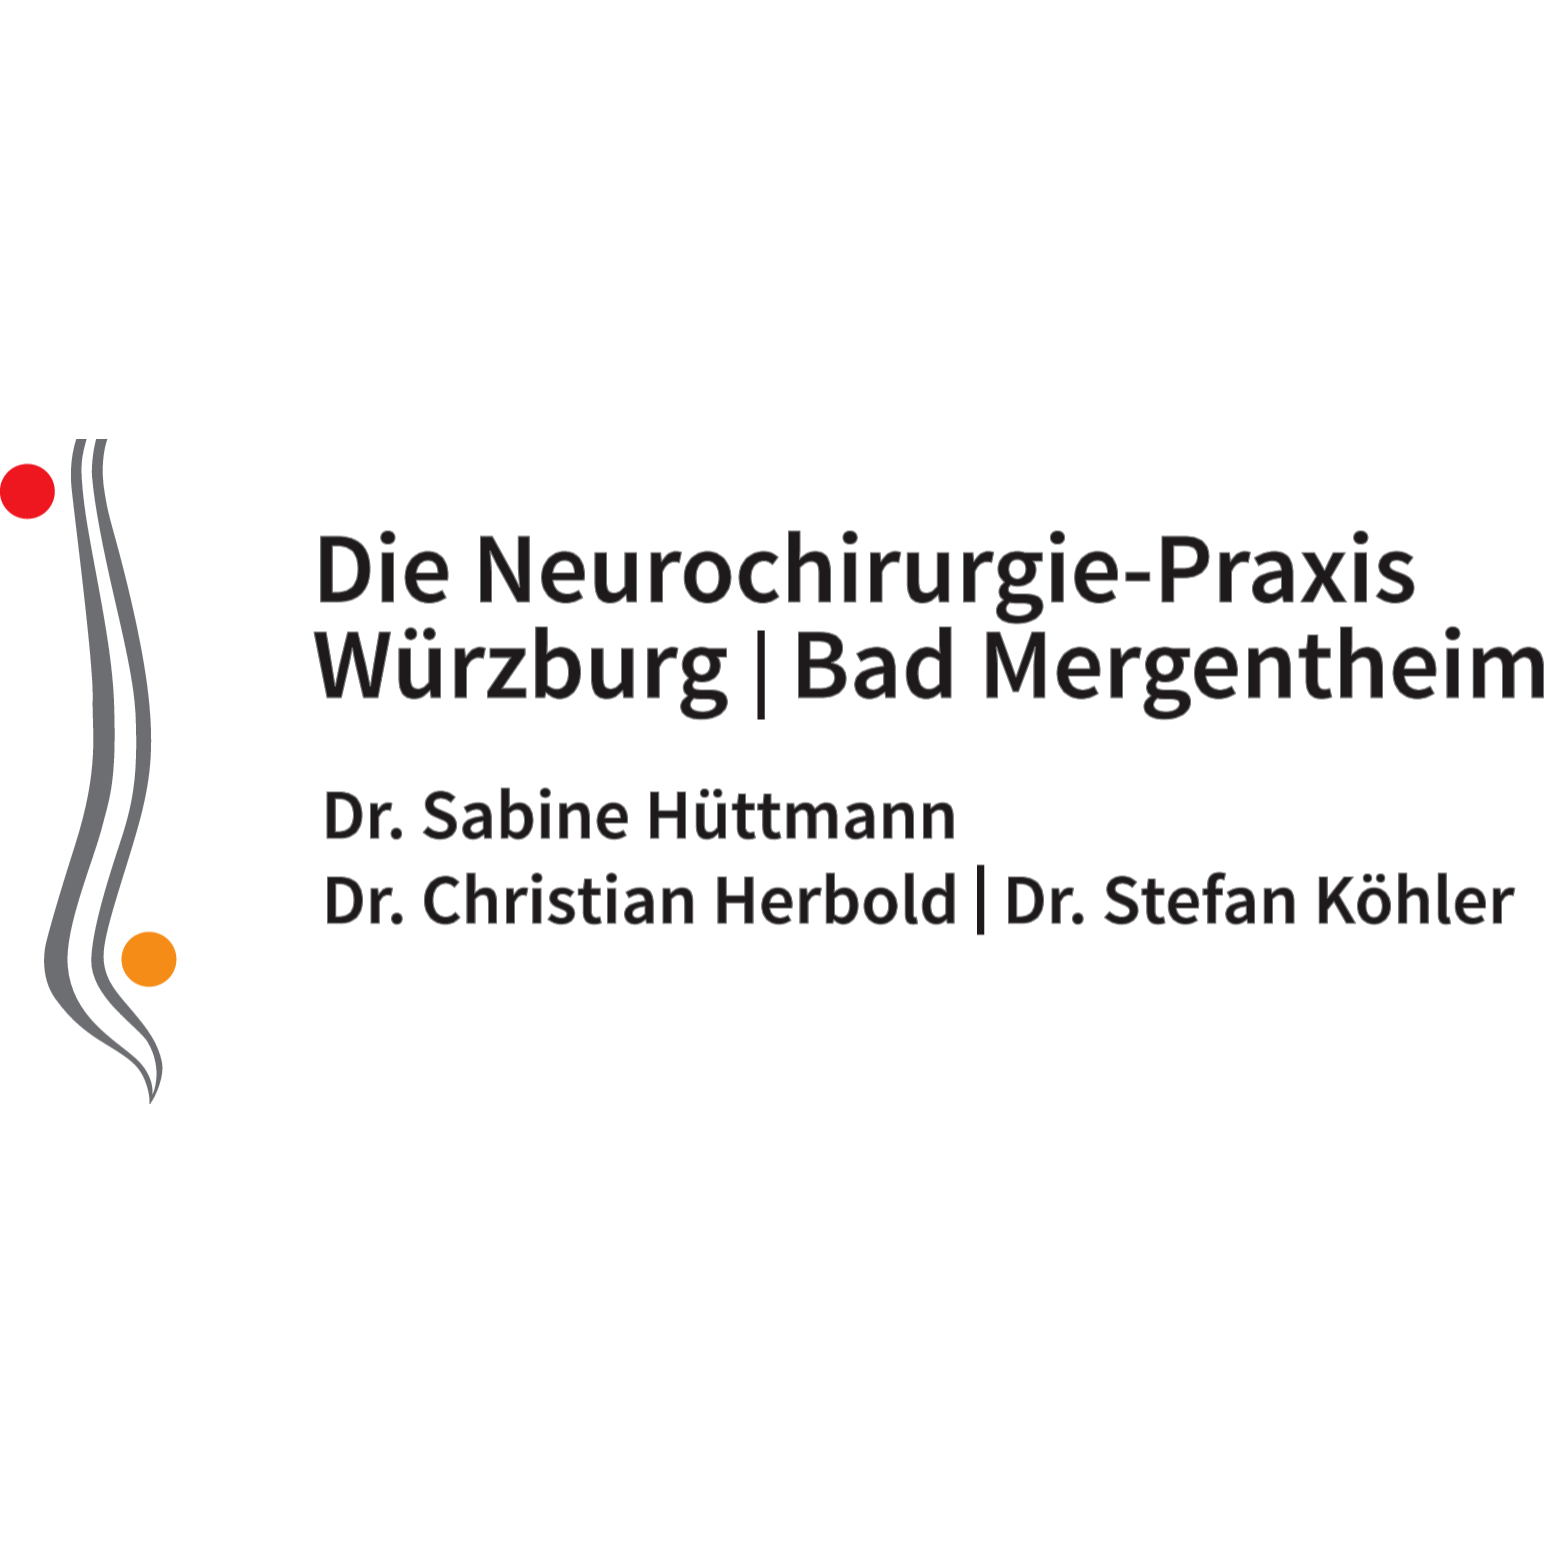 Die Neurochirurgie - Praxis Würzburg Bad Mergentheim in Burgebrach - Logo